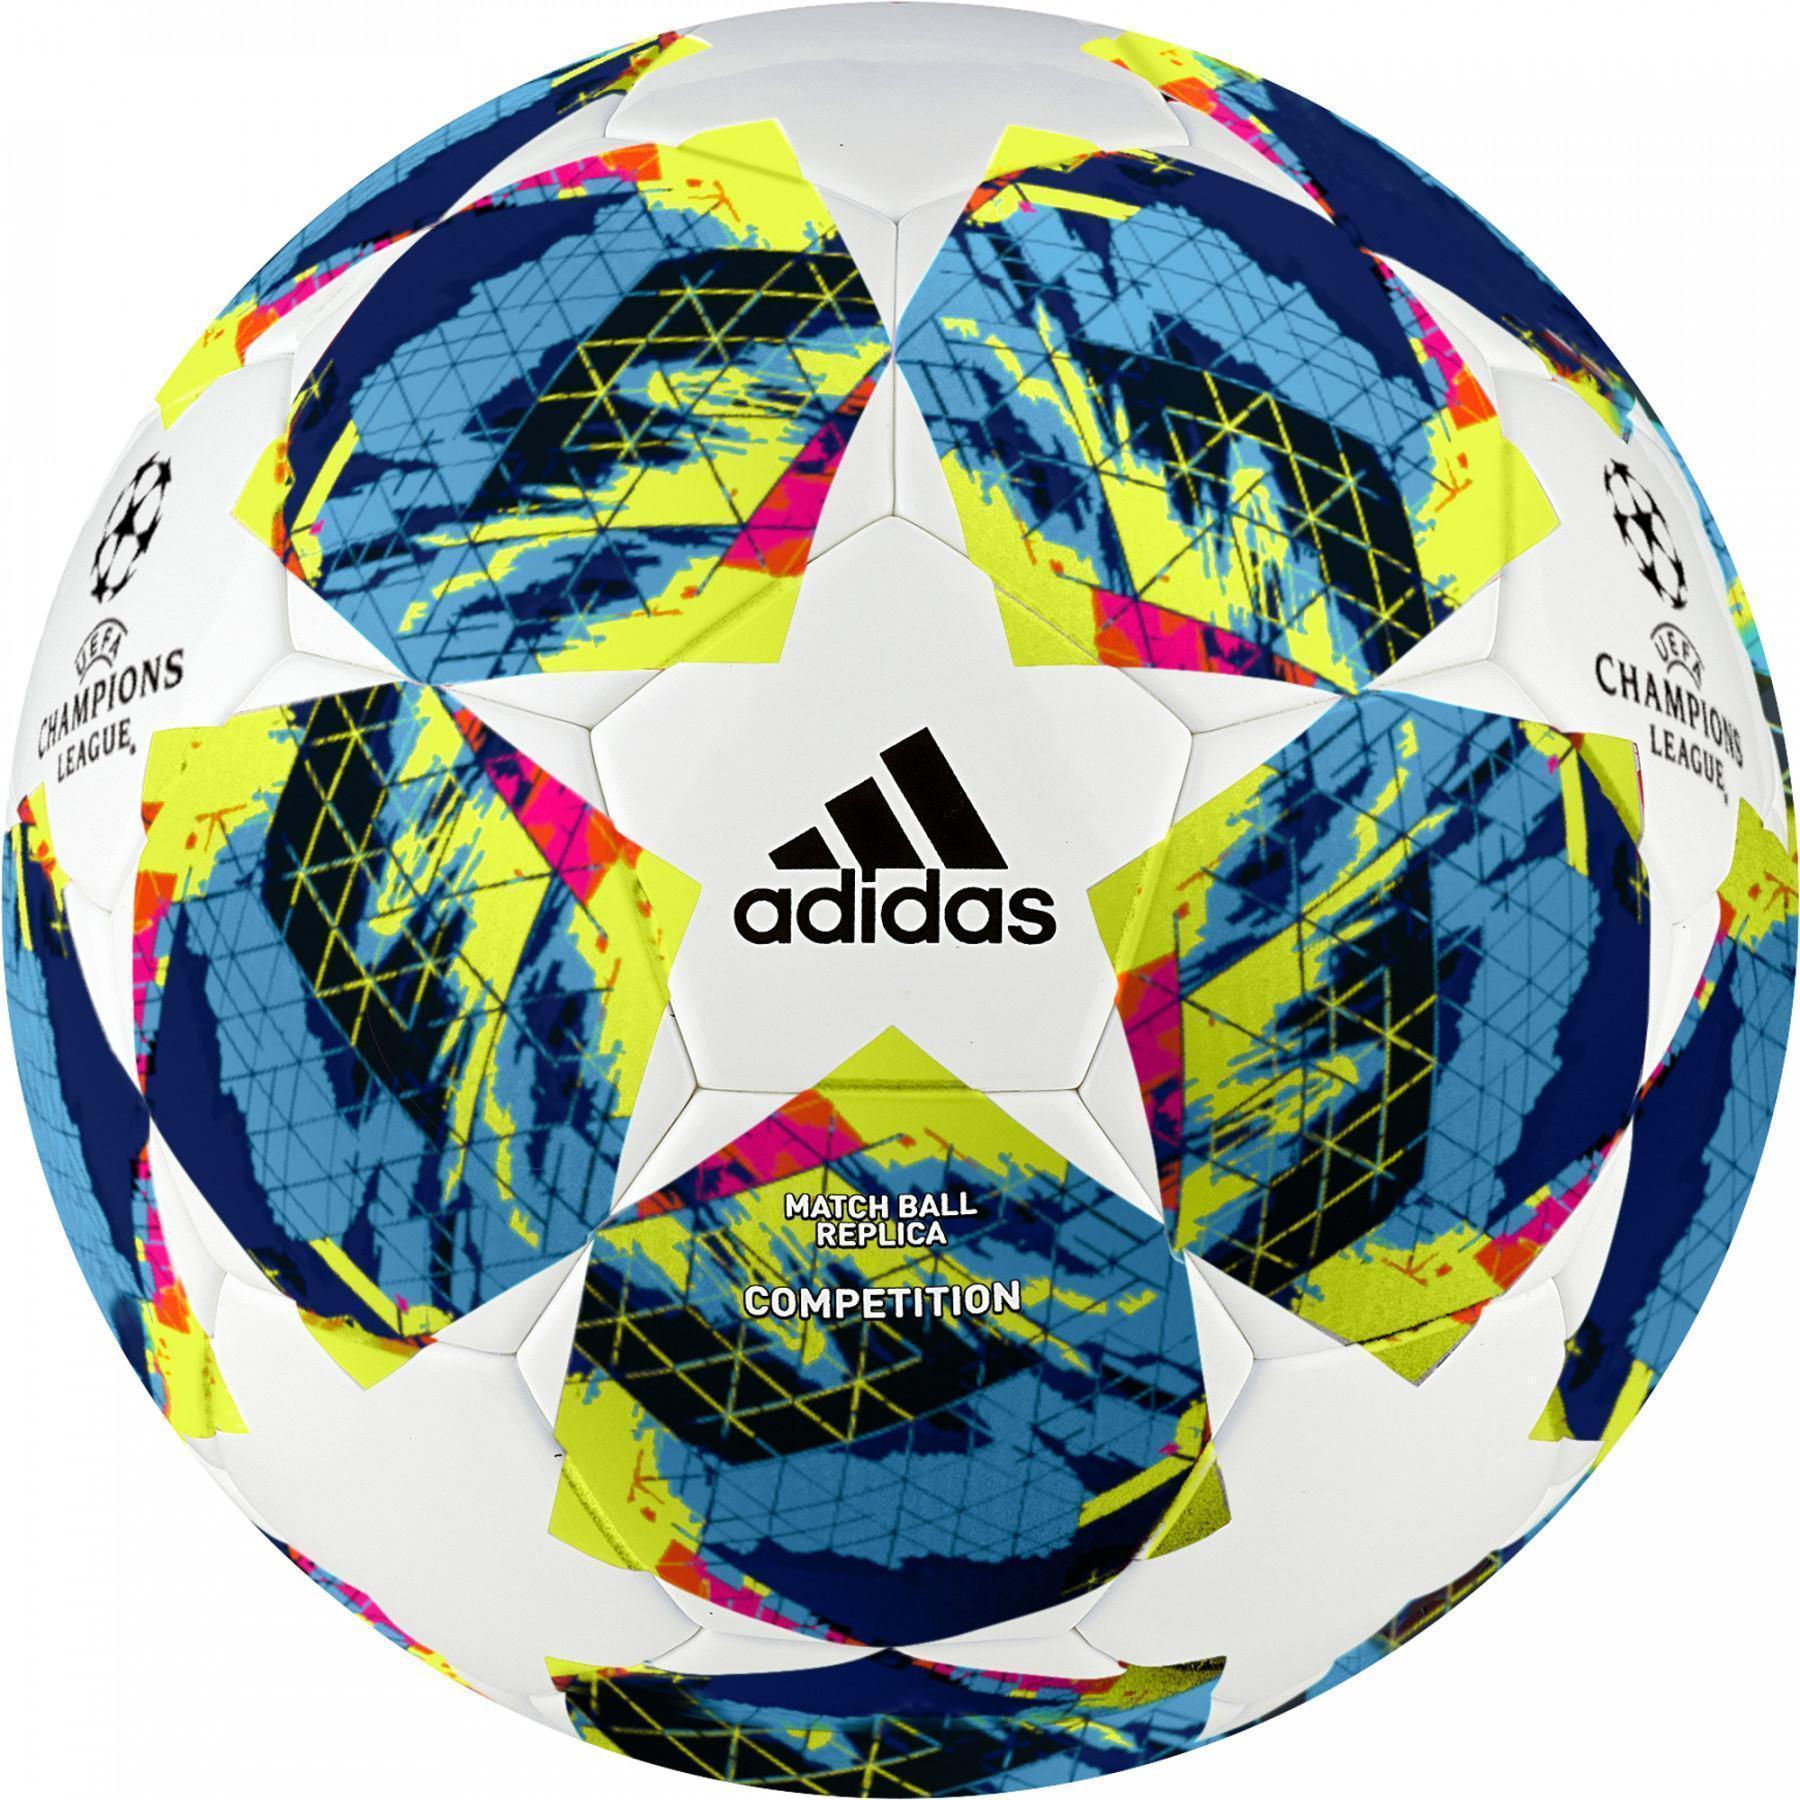 Ballons - UEFA Champions League